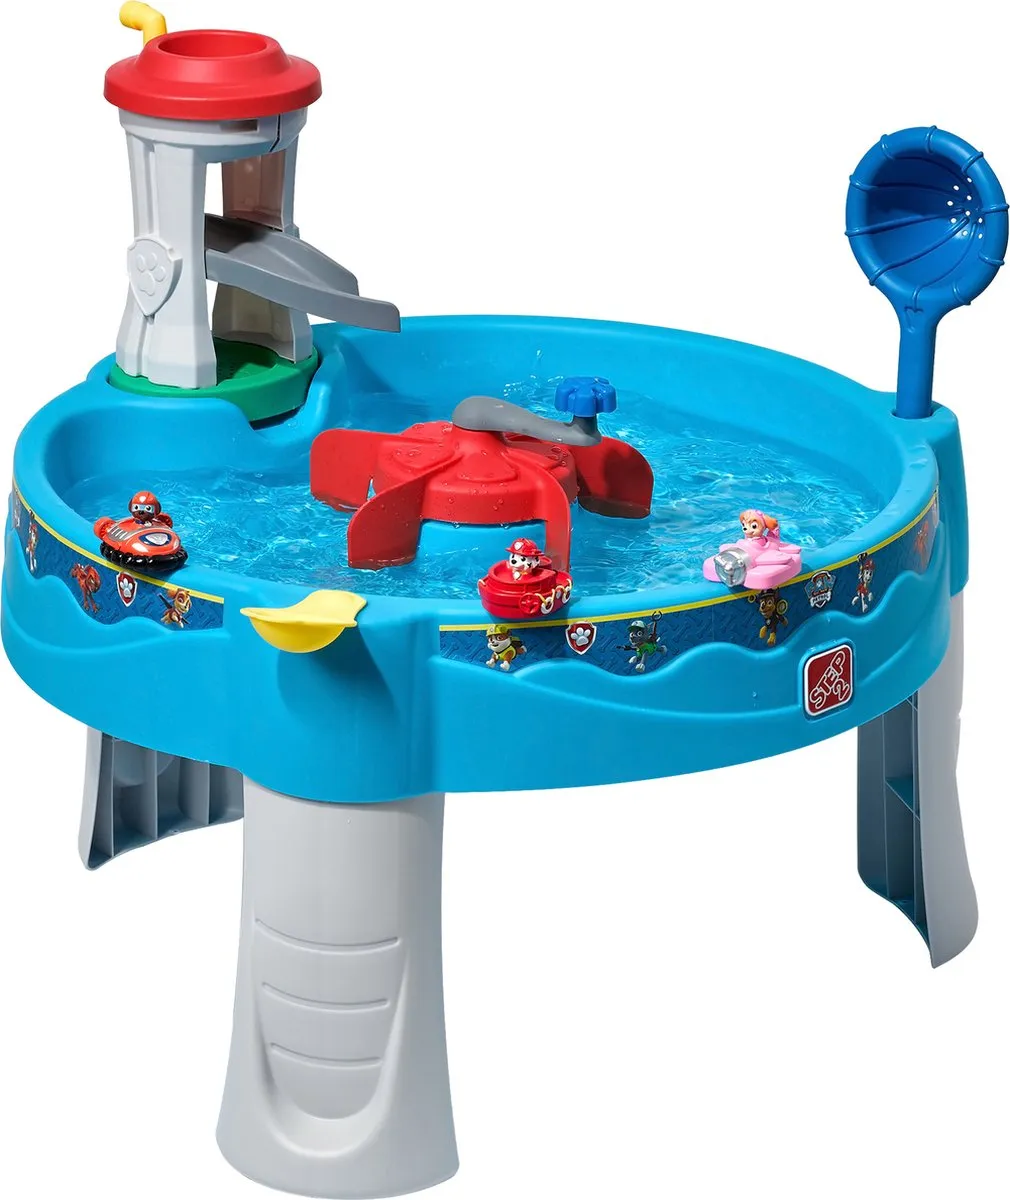 Step2 Paw Patrol Watertafel - Kunststof water tafel met 8-delige accessoireset - Waterspeelgoed voor kinderen - Activiteitentafel met water voor de tuin speelgoed